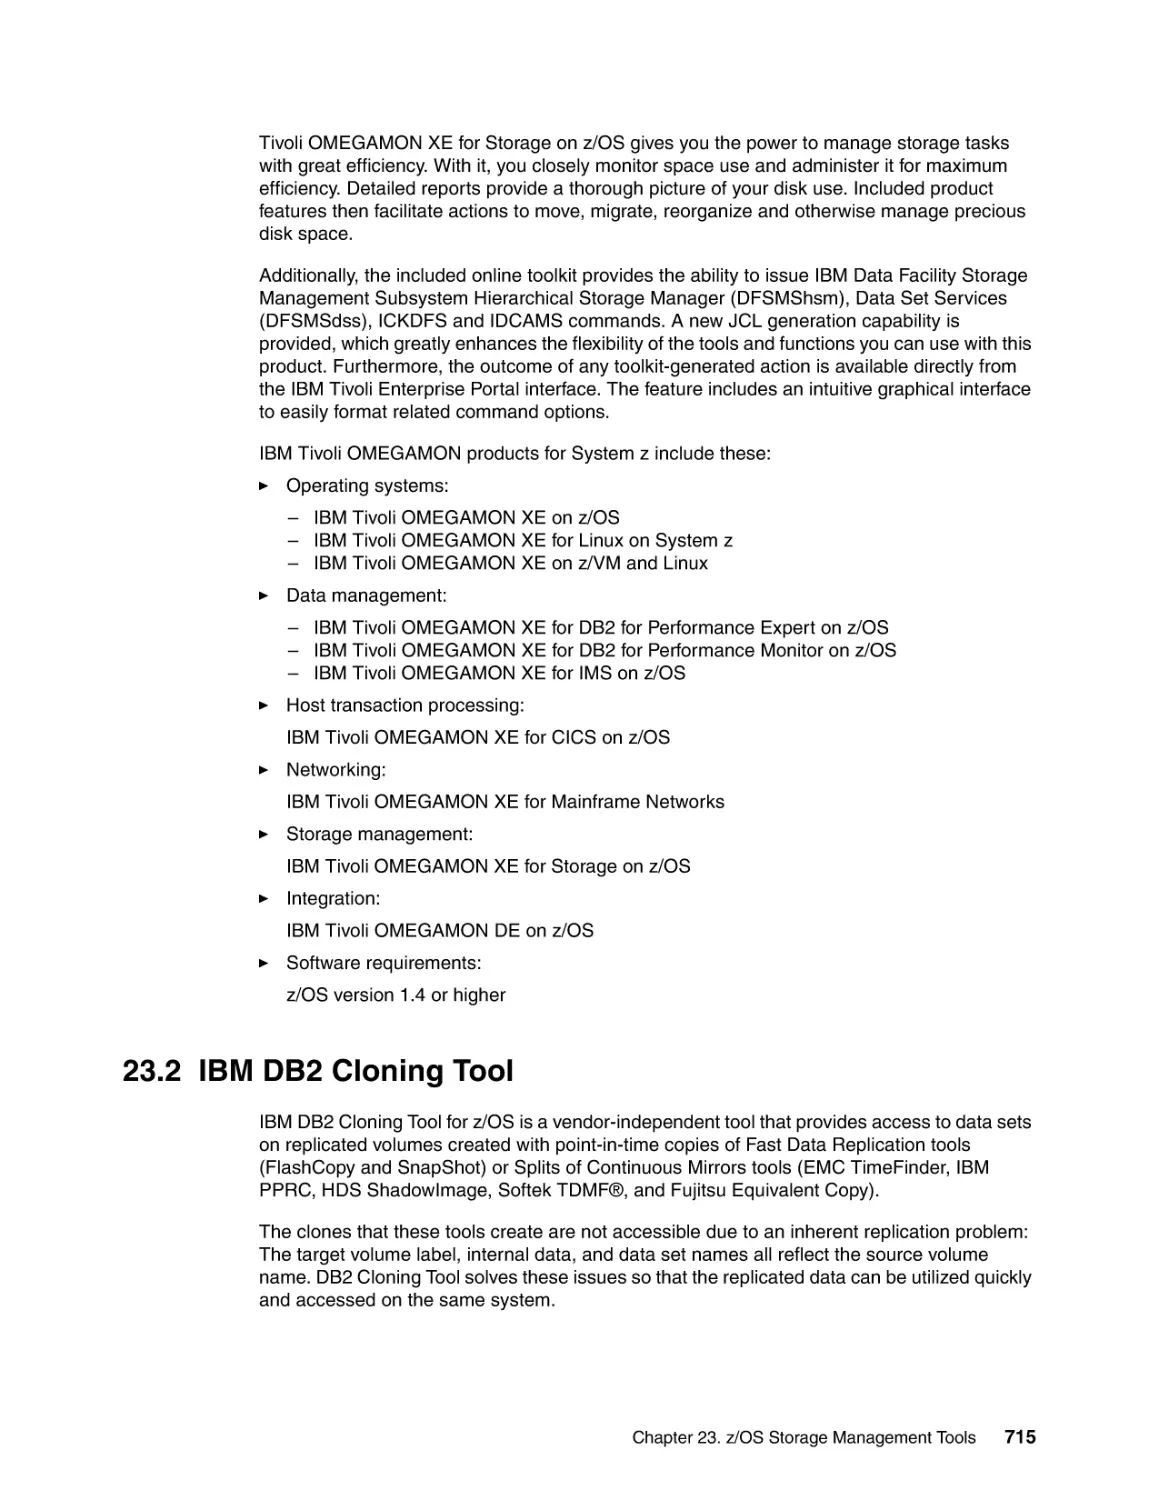 23.2 IBM DB2 Cloning Tool